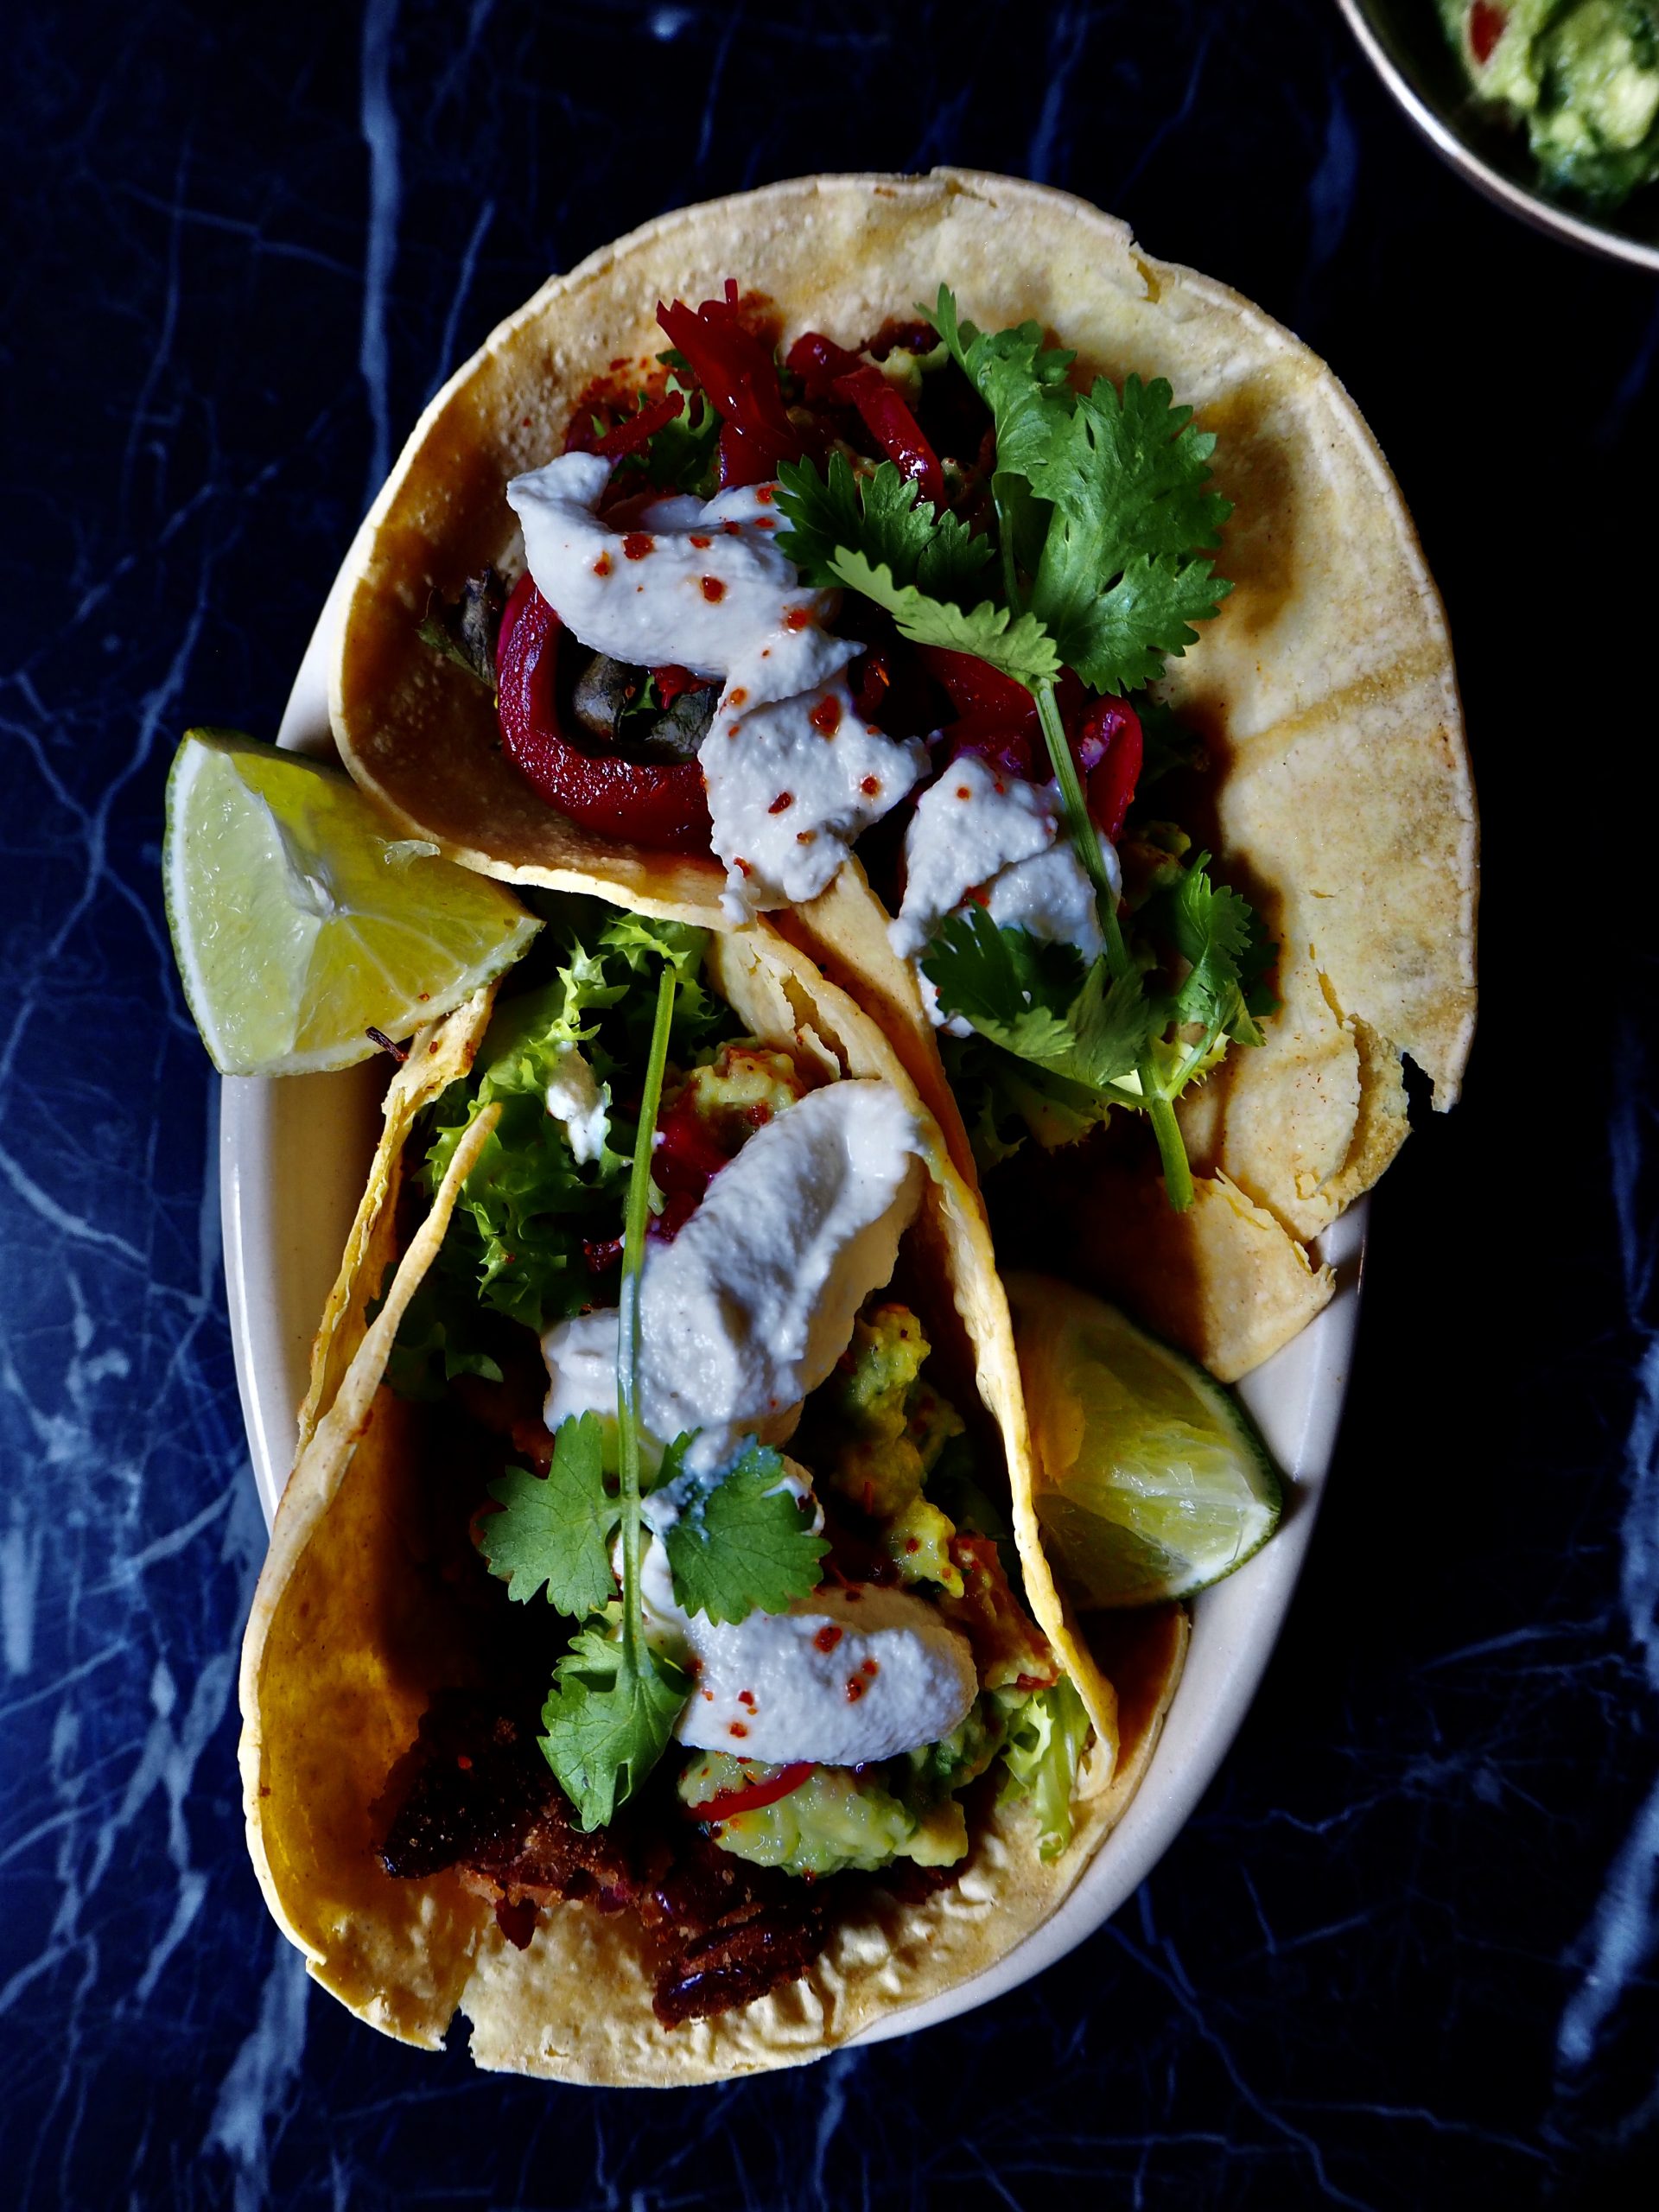 vegan tacos met bonen van bovenaf gezien tegen een donkere achtergrond